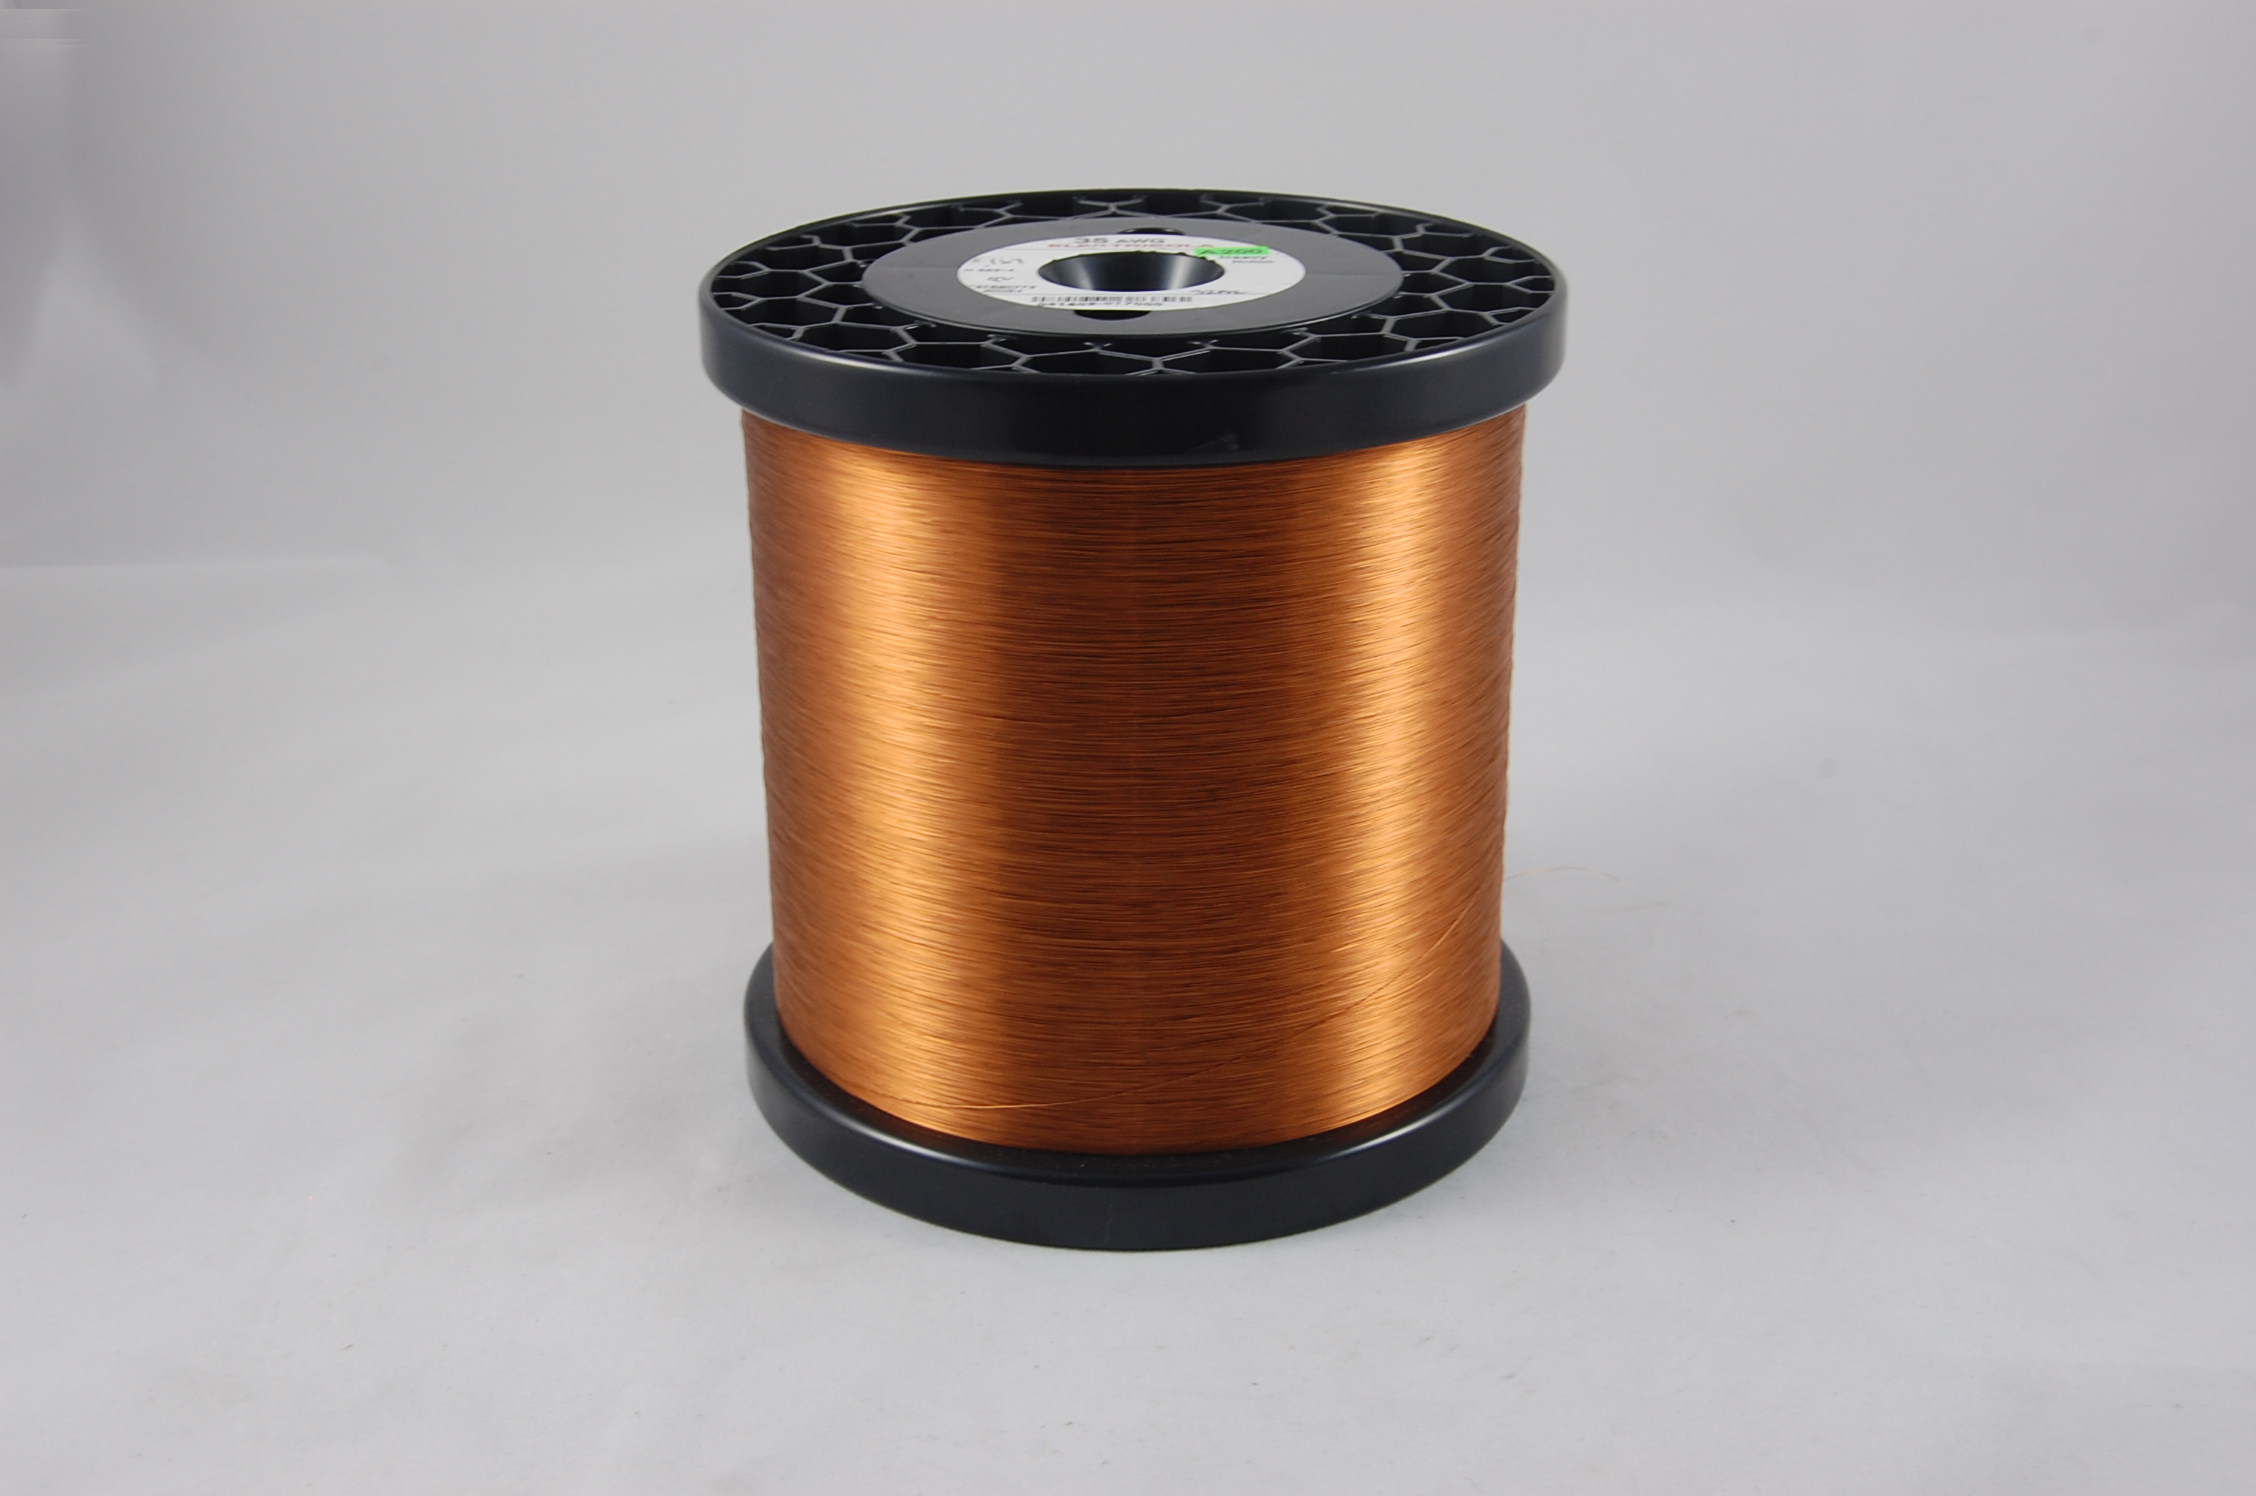 #35 Single Amidester 200 Round MW 74 Copper Magnet Wire 200°C, copper,  14 LB 6" x 6" spool (average wght.)